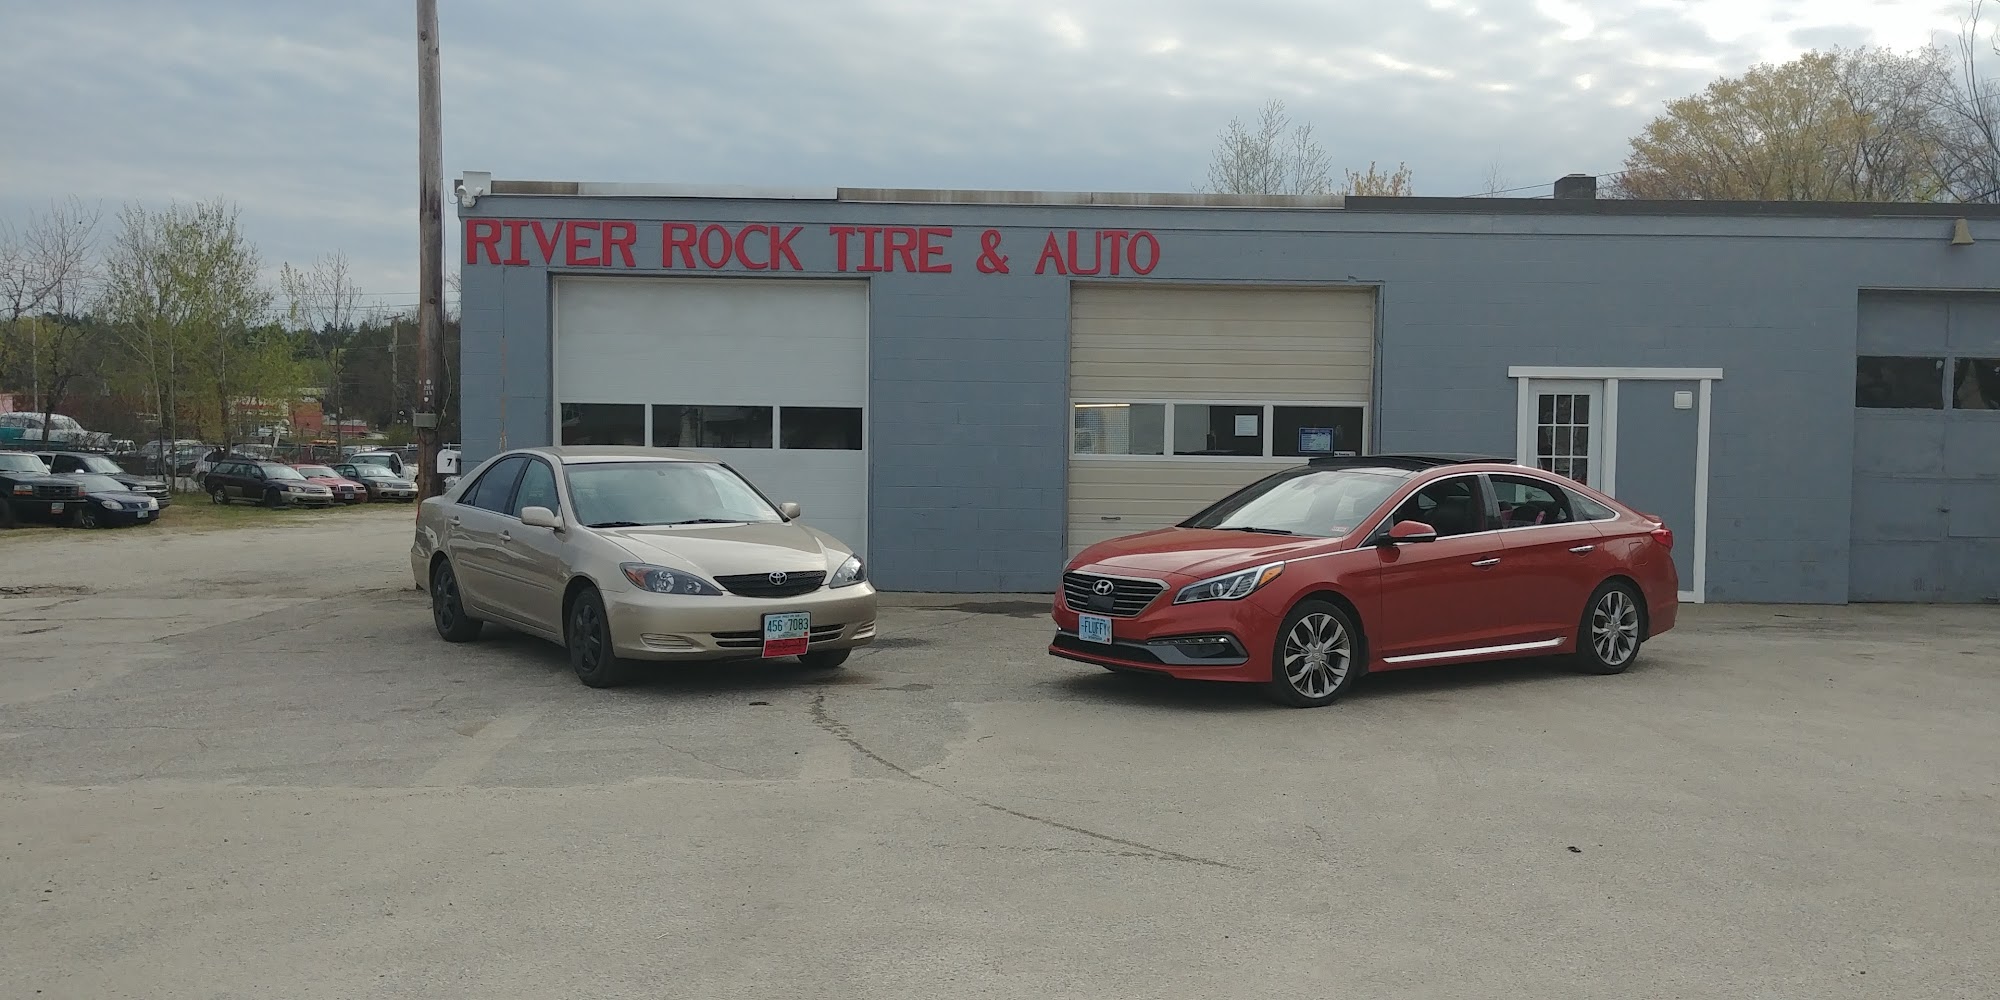 River Rock Tire & Auto